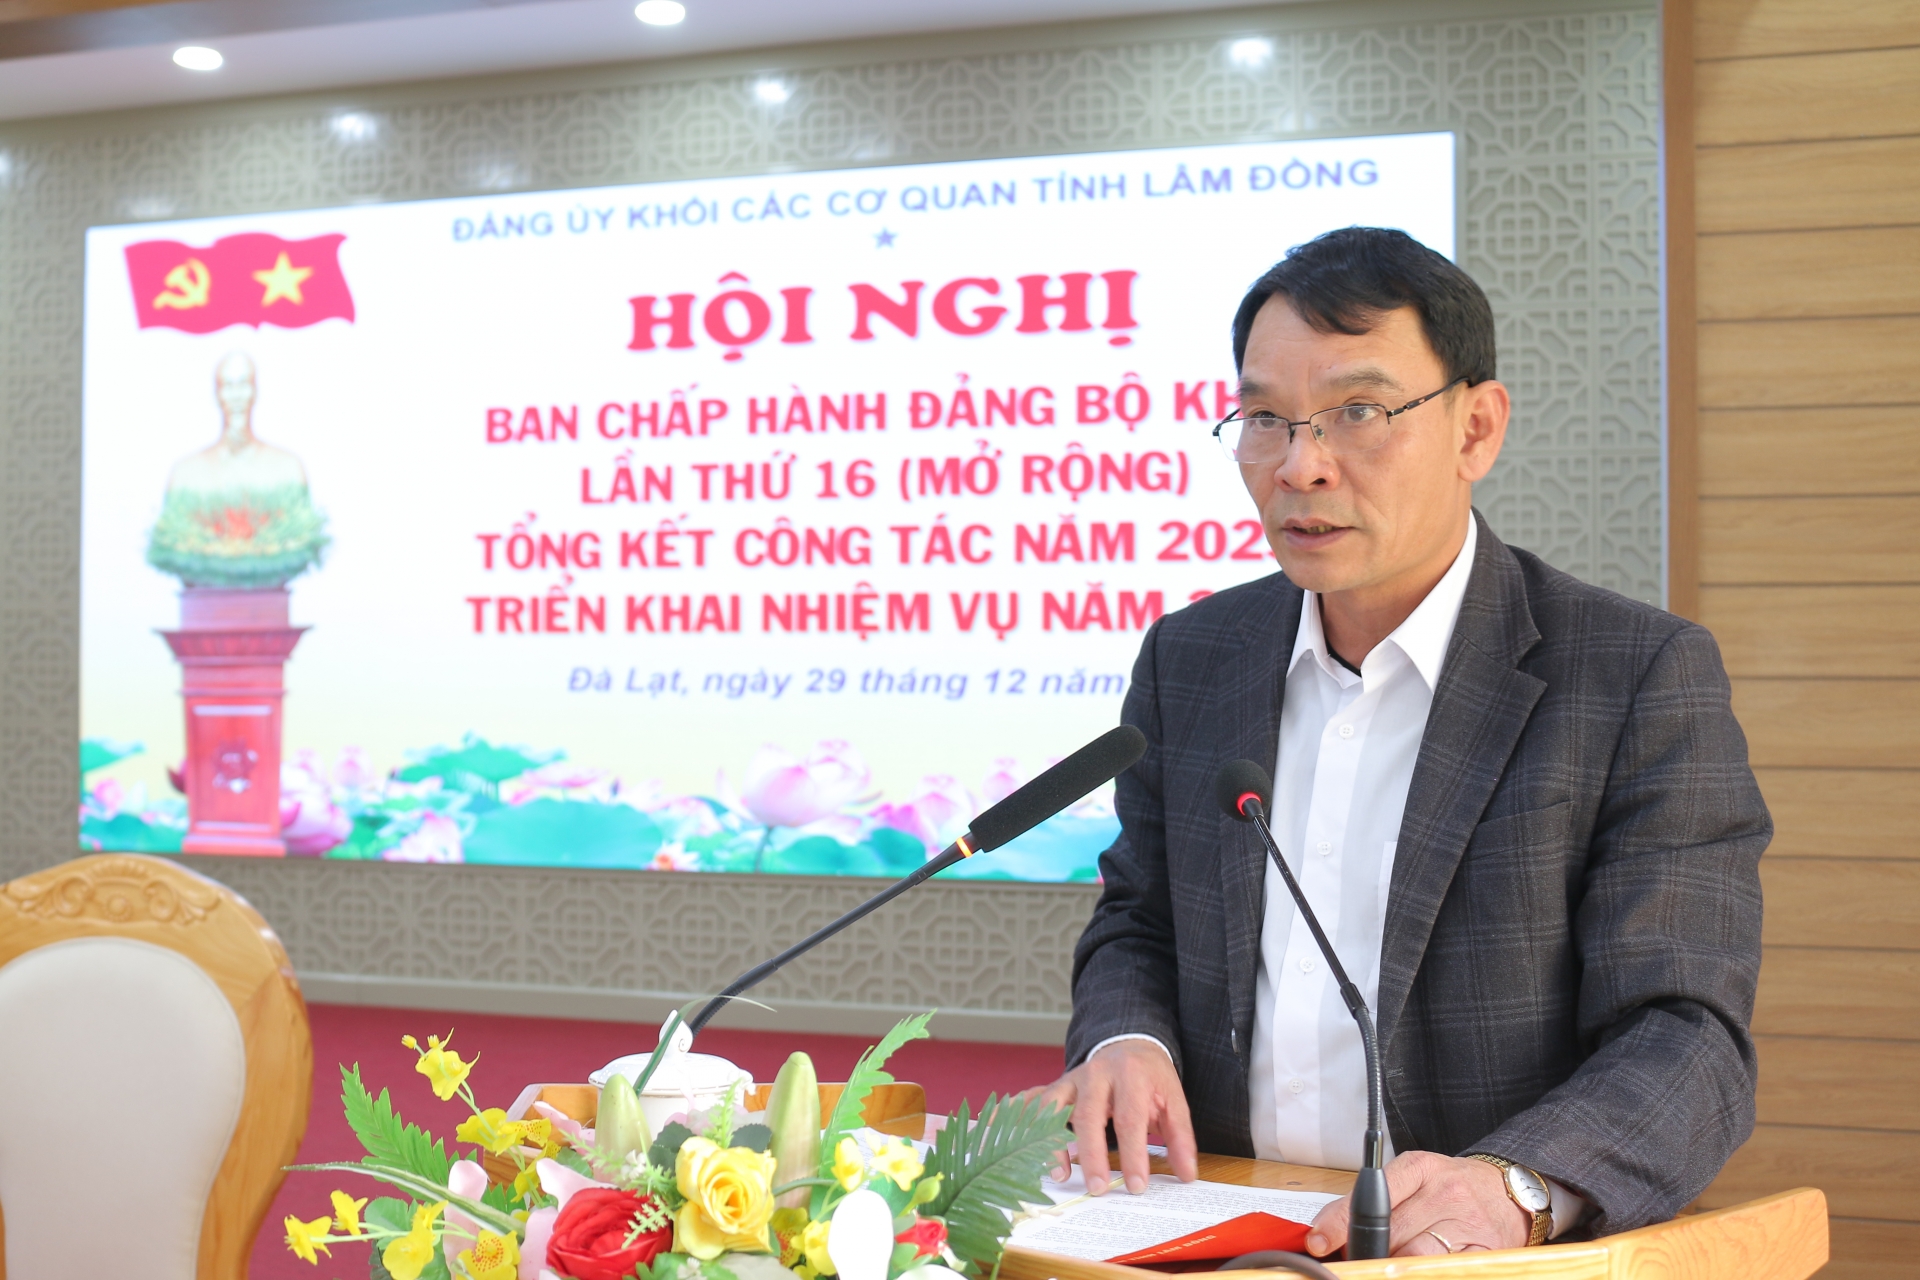 Đồng chí Lương Văn Mừng - Phó Bí thư Đảng ủy Khối thông qua Nghị quyết lãnh đạo thực hiện nhiệm vụ năm 2024